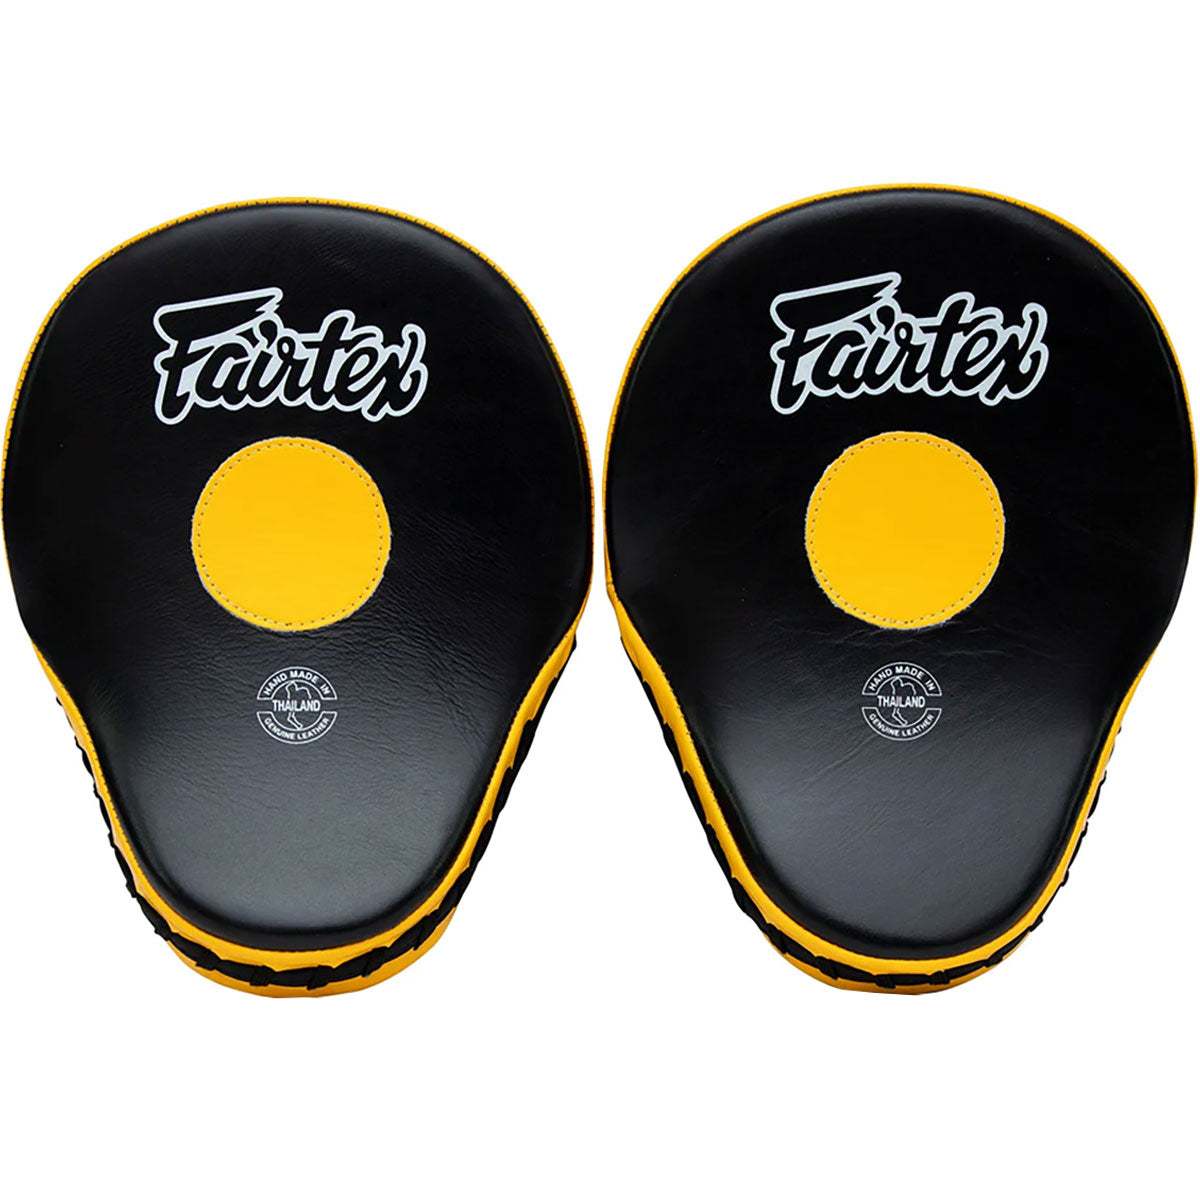 Focus Mitts Fairtex FMV9 Black Yellow Contoured